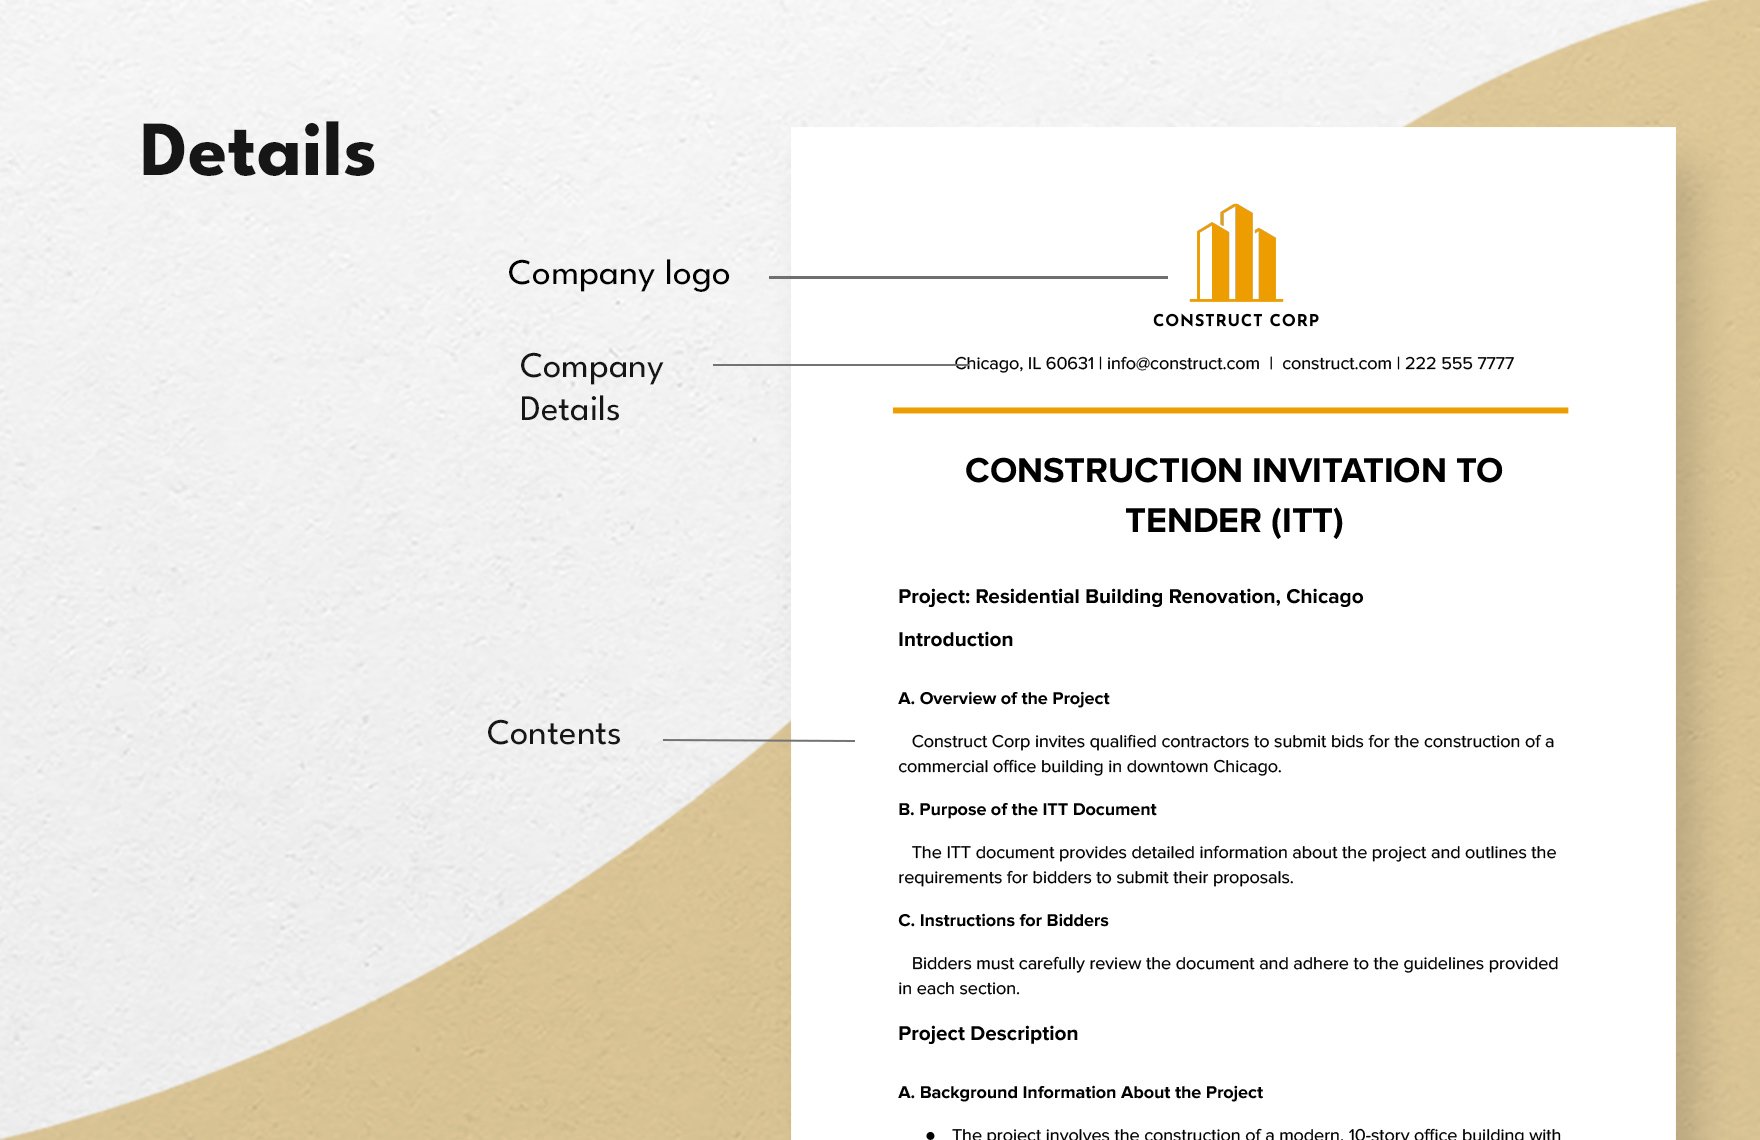 Construction Invitation to Tender (ITT) Template